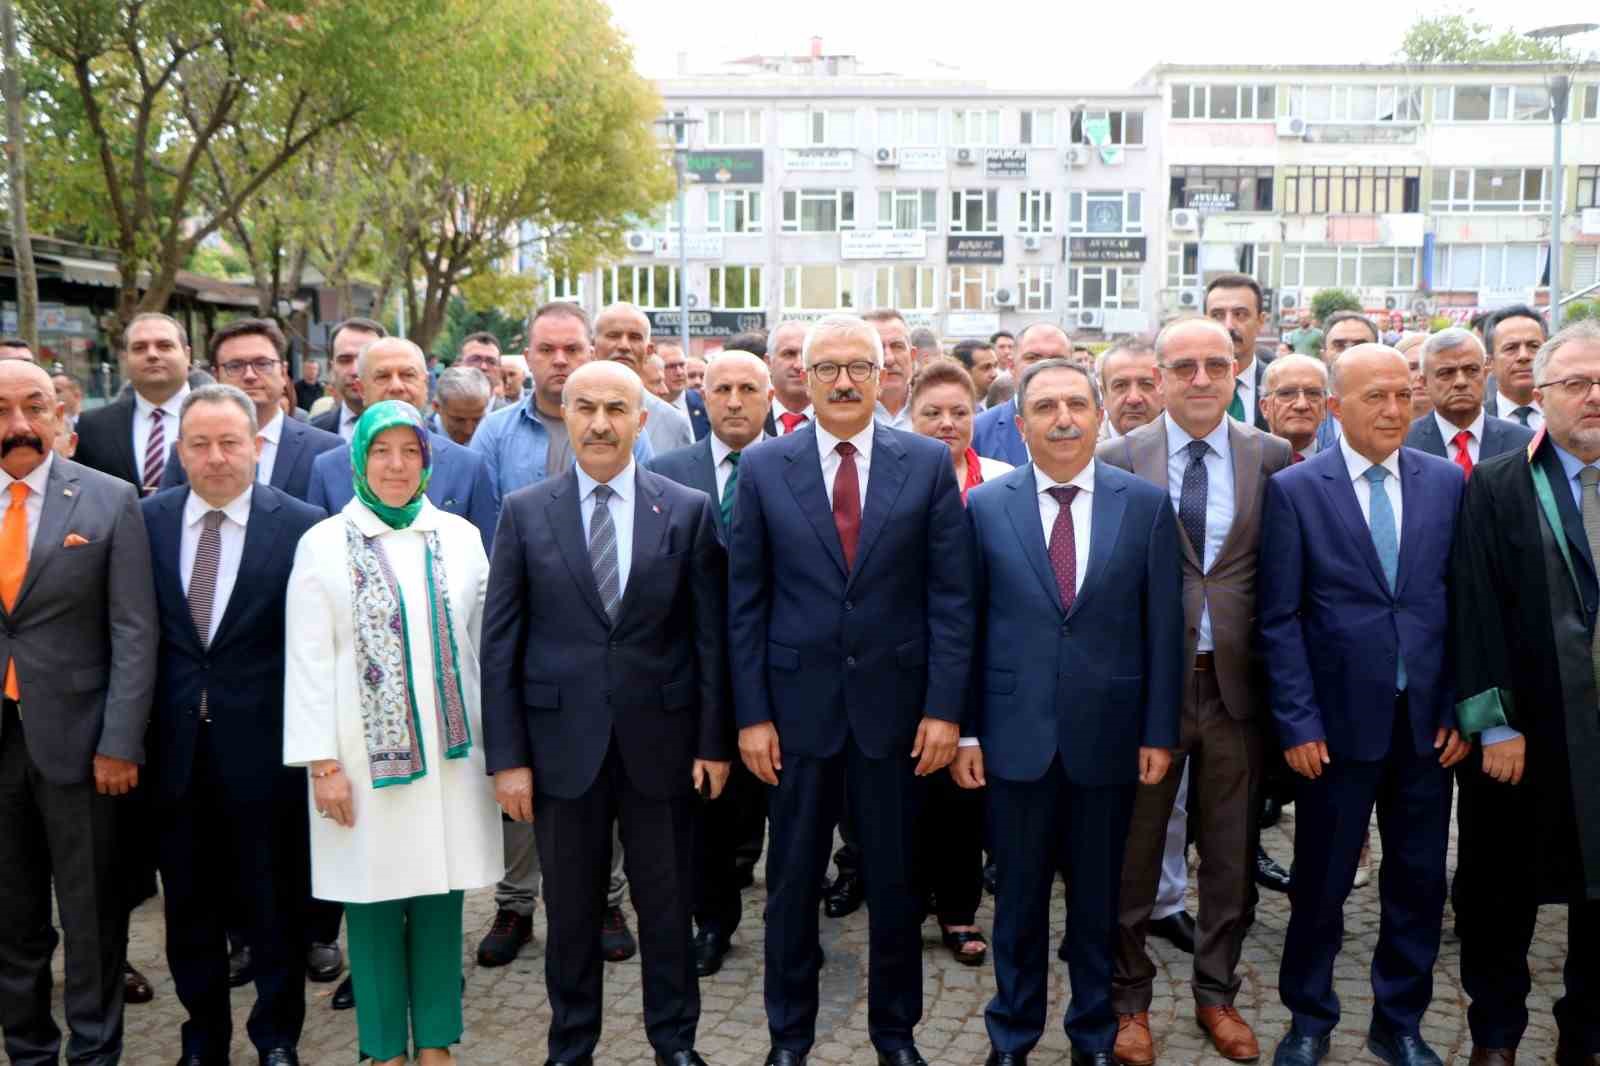 Bursa’da adli yılın açılışı için tören düzenlendi